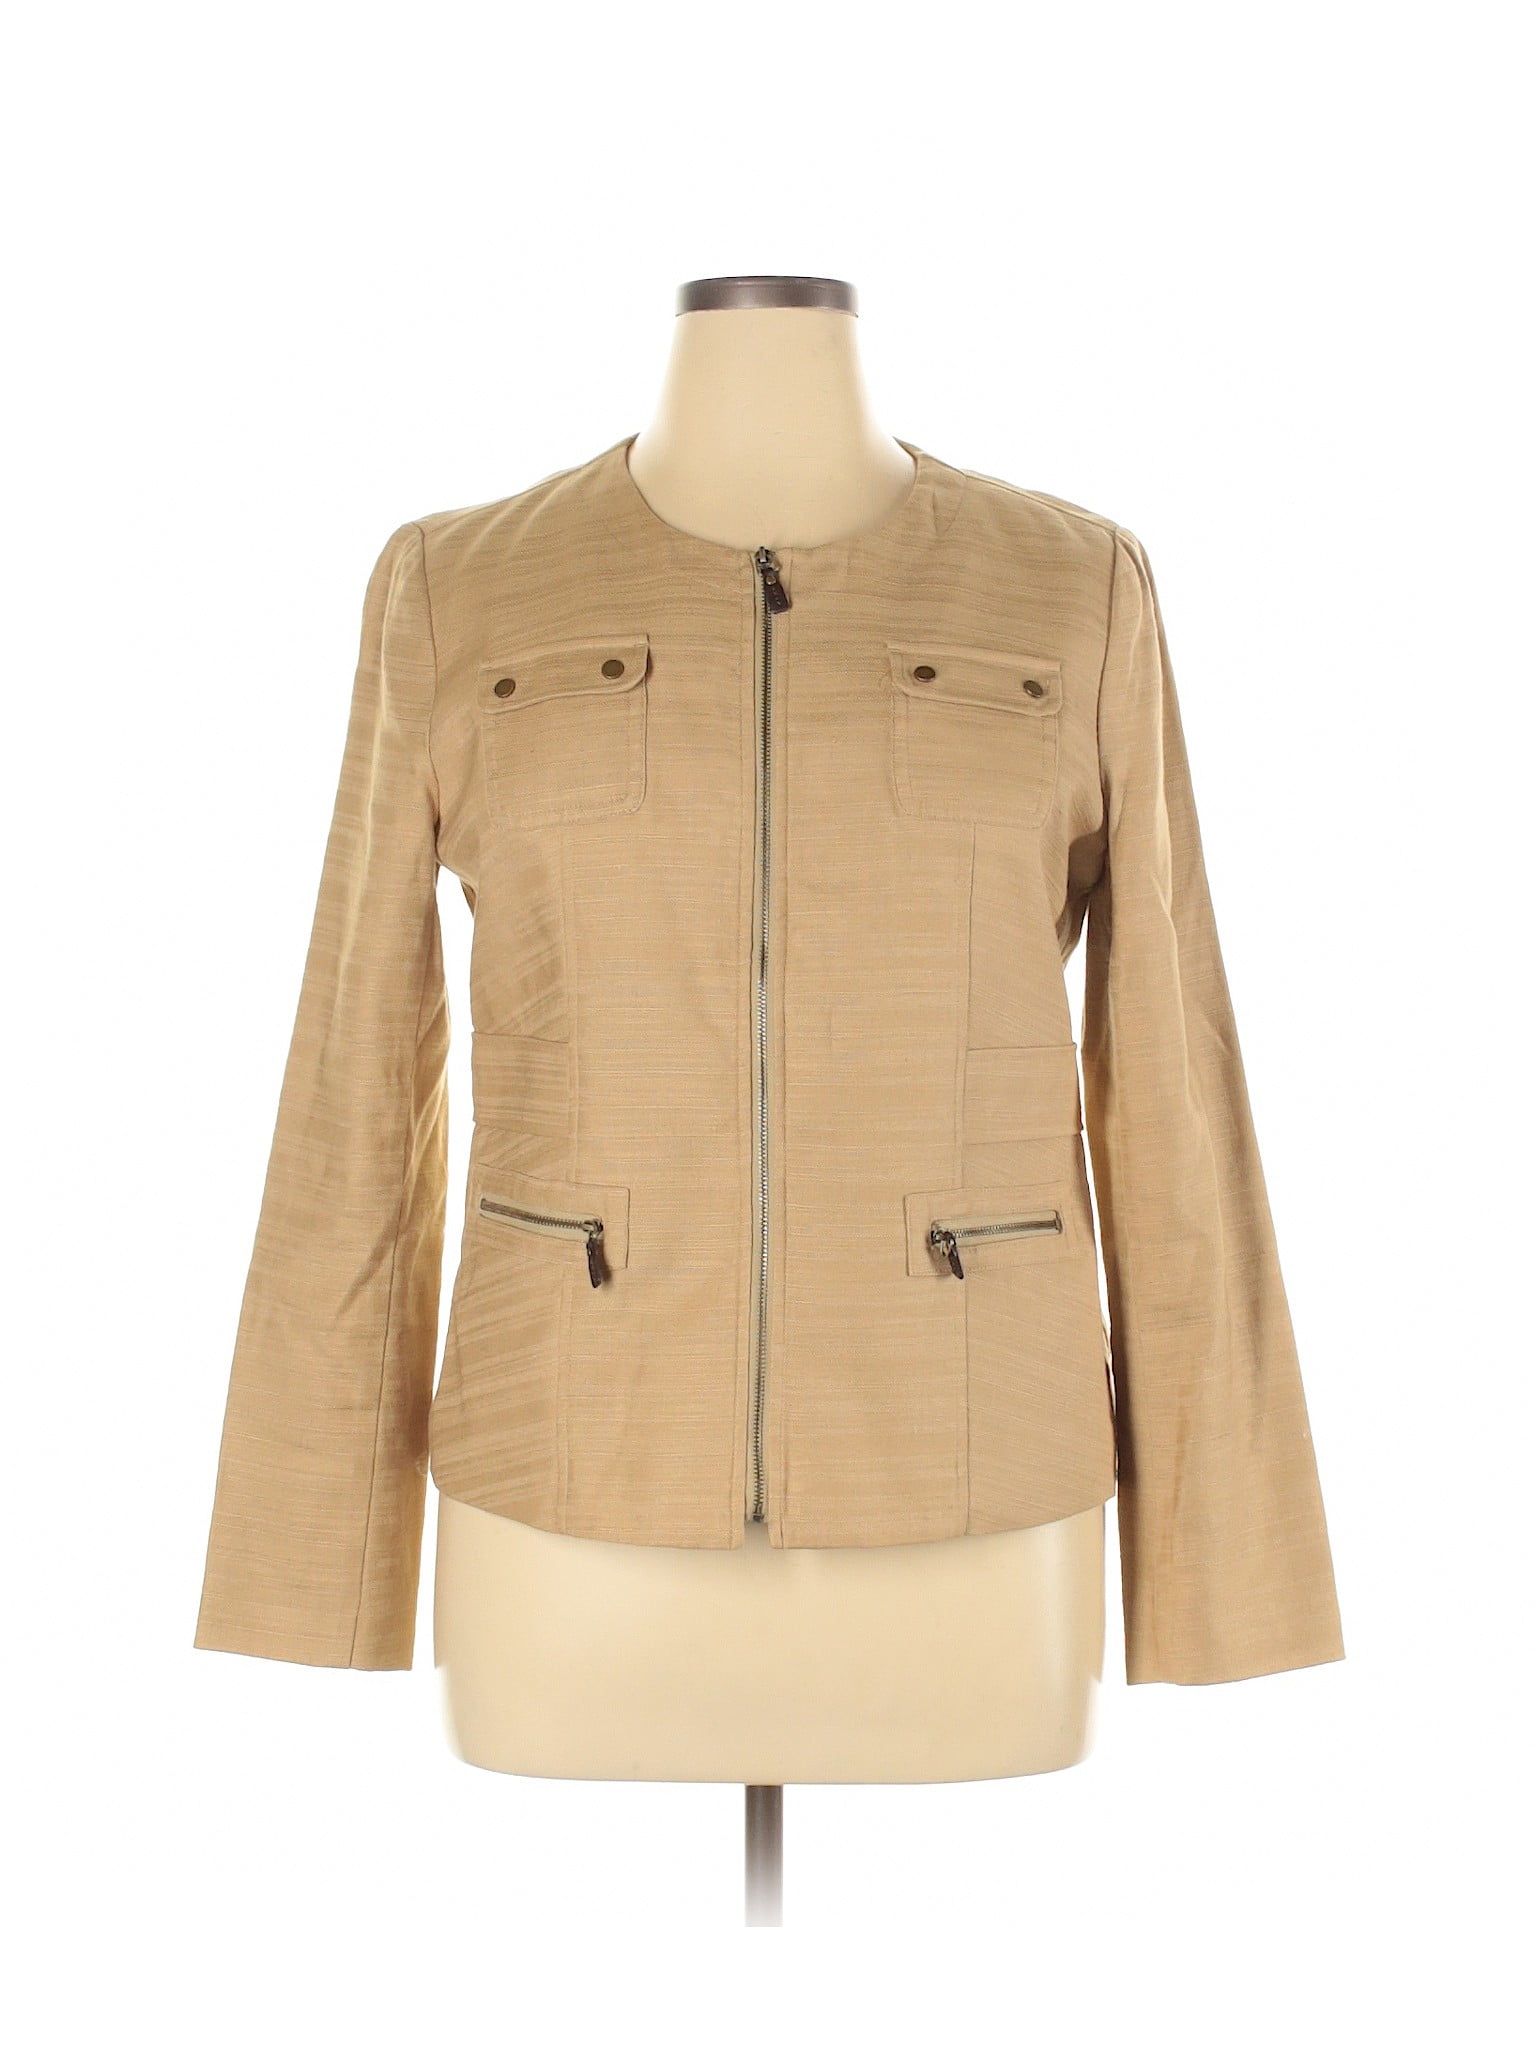 Dana Buchman Luxury - Pre-Owned Dana Buchman Women's Size 14 Jacket ...